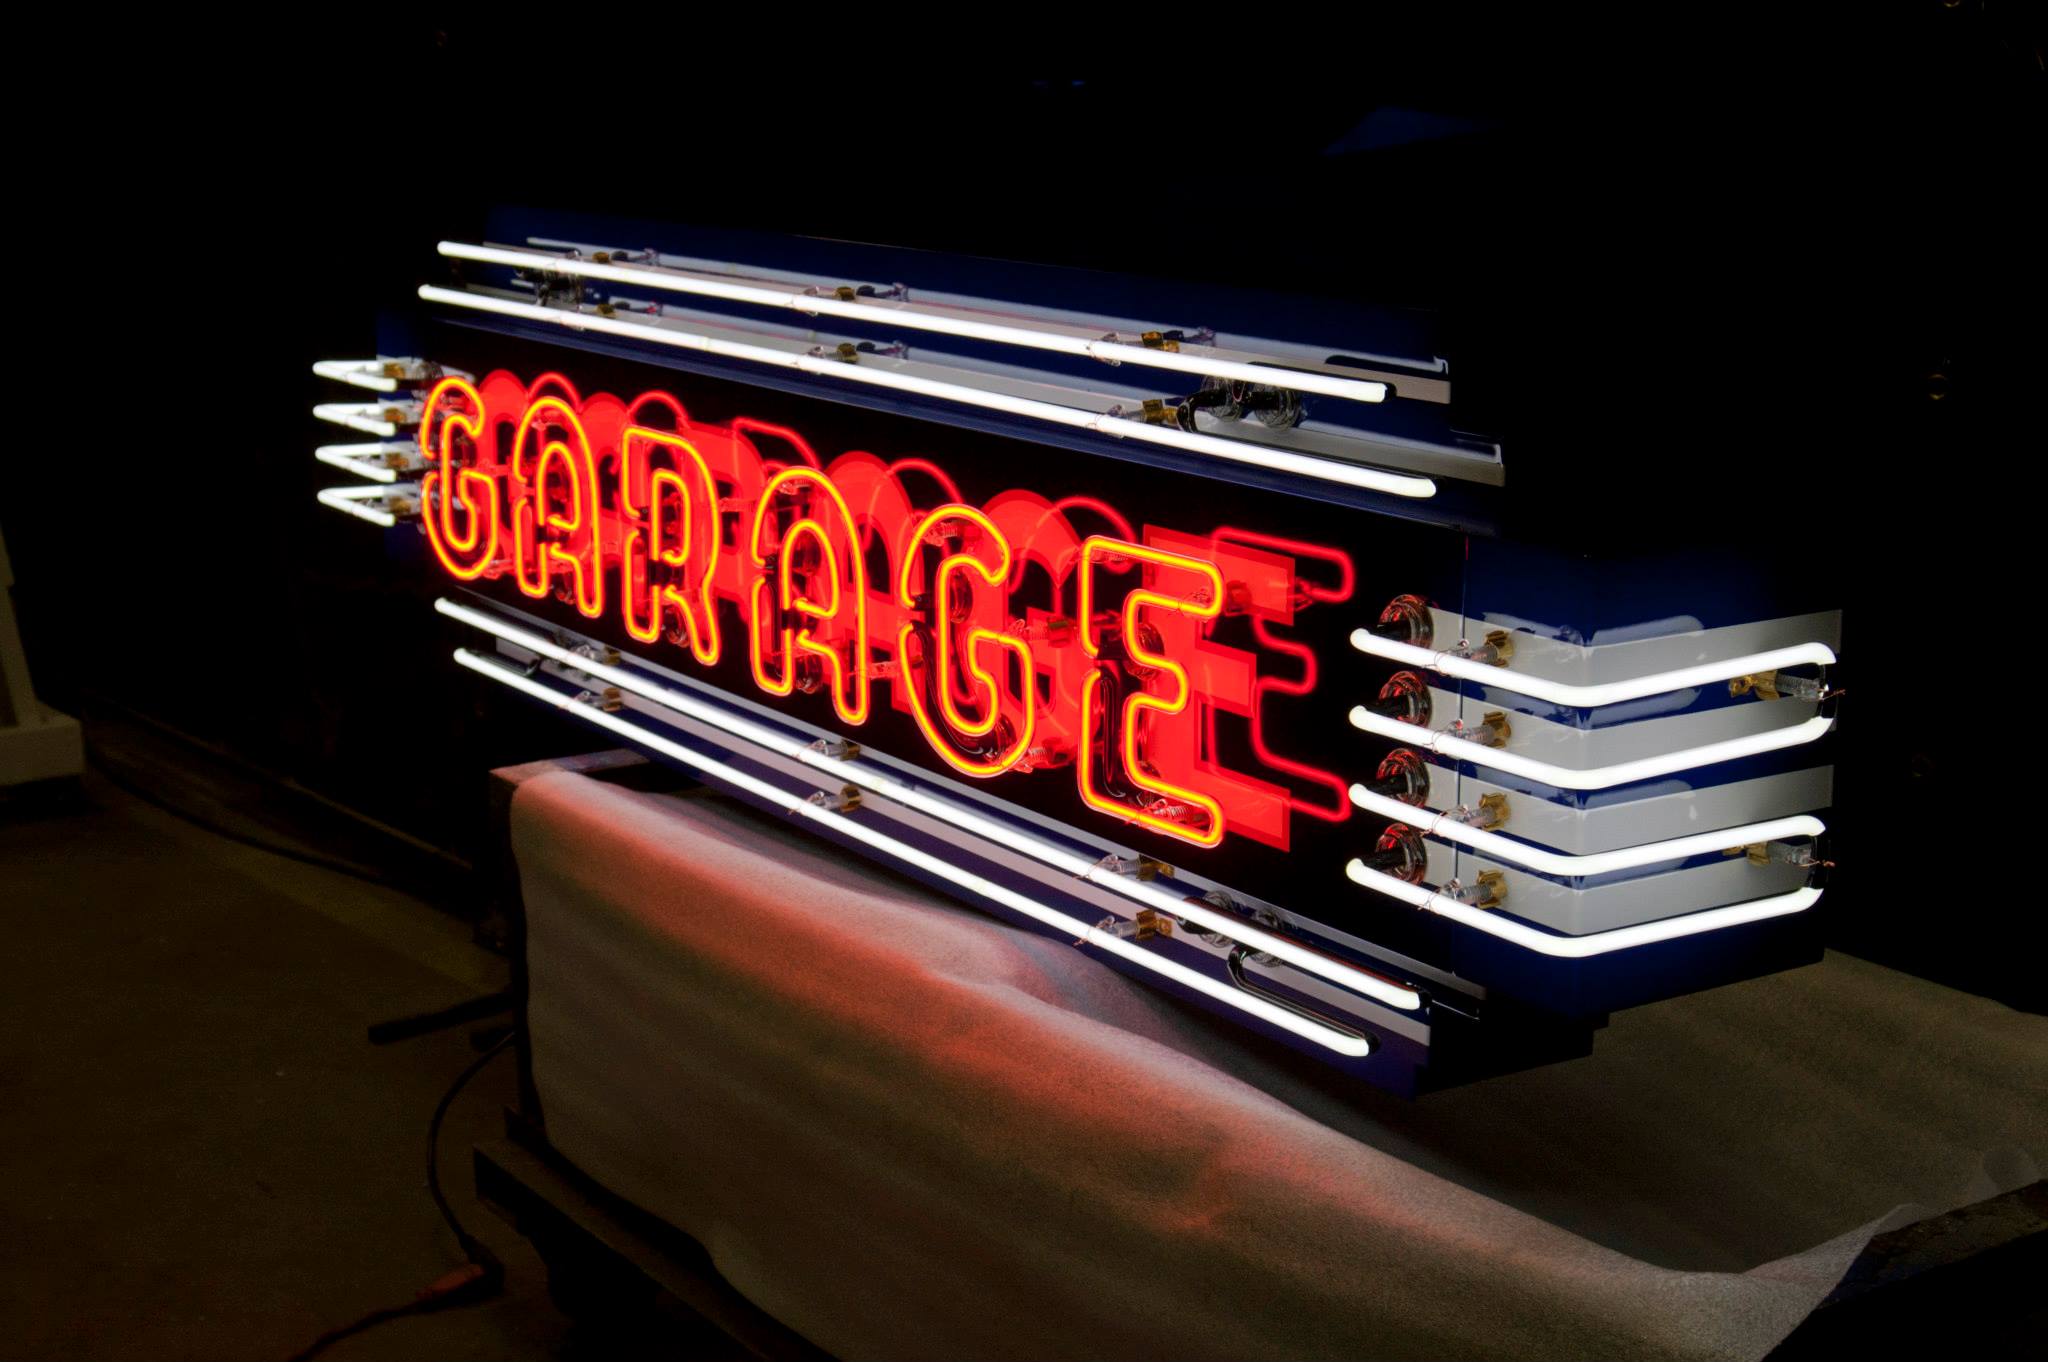 "Garage" in bold neon script1